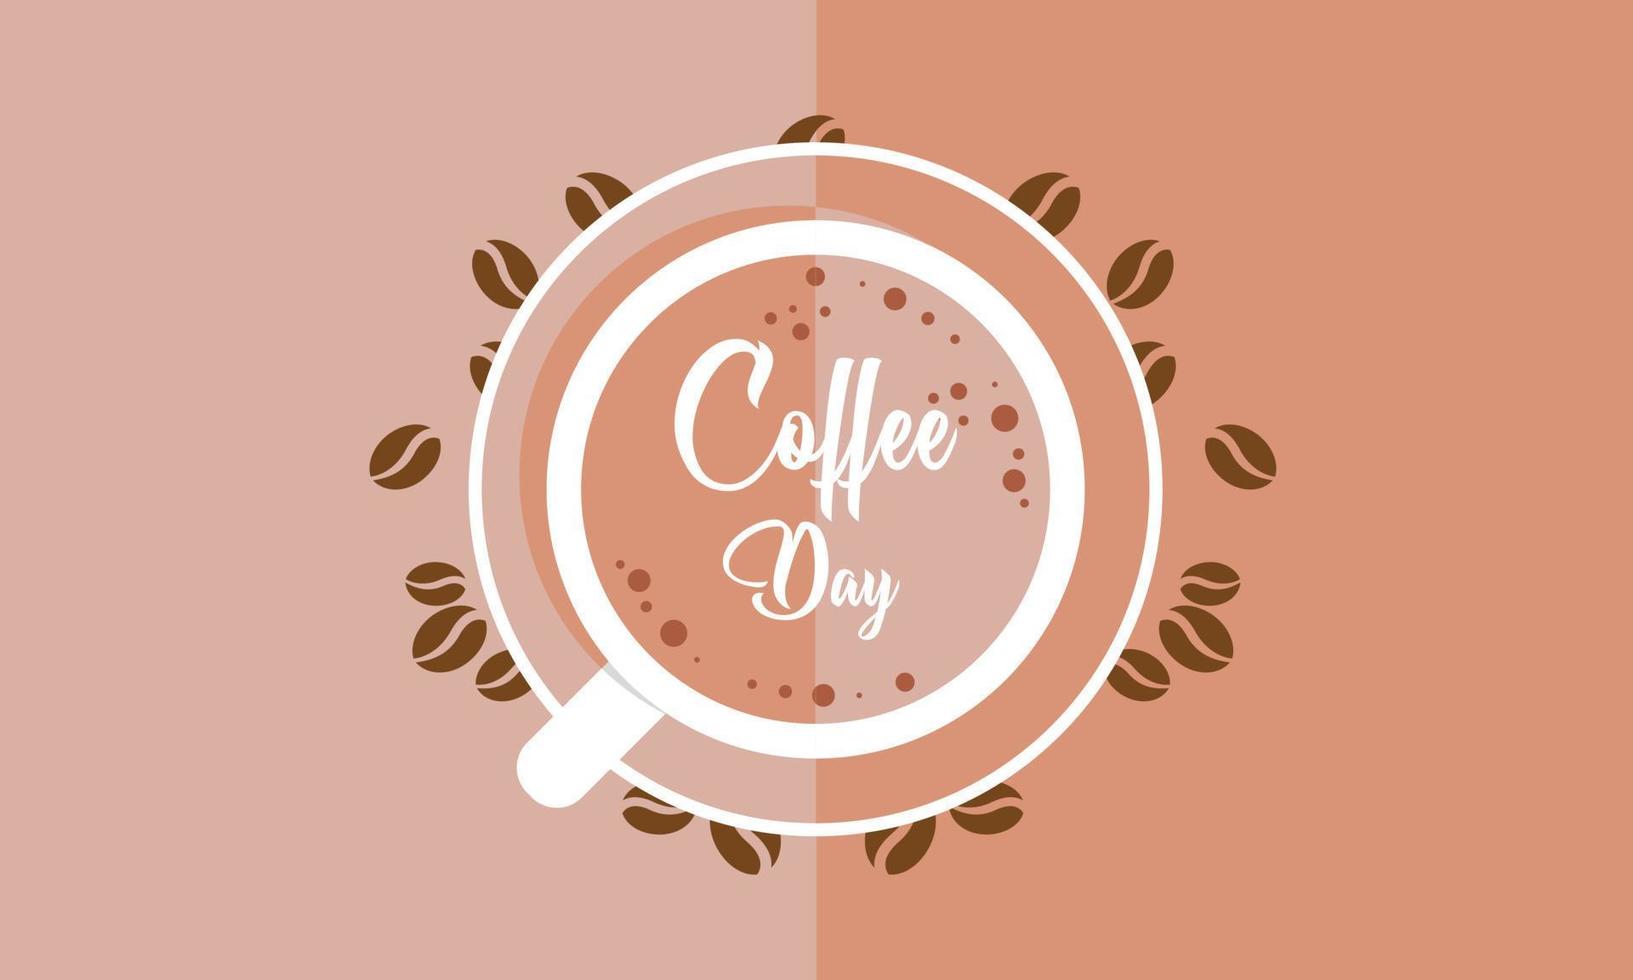 journée internationale du fond du café, logo de la tasse de café vecteur